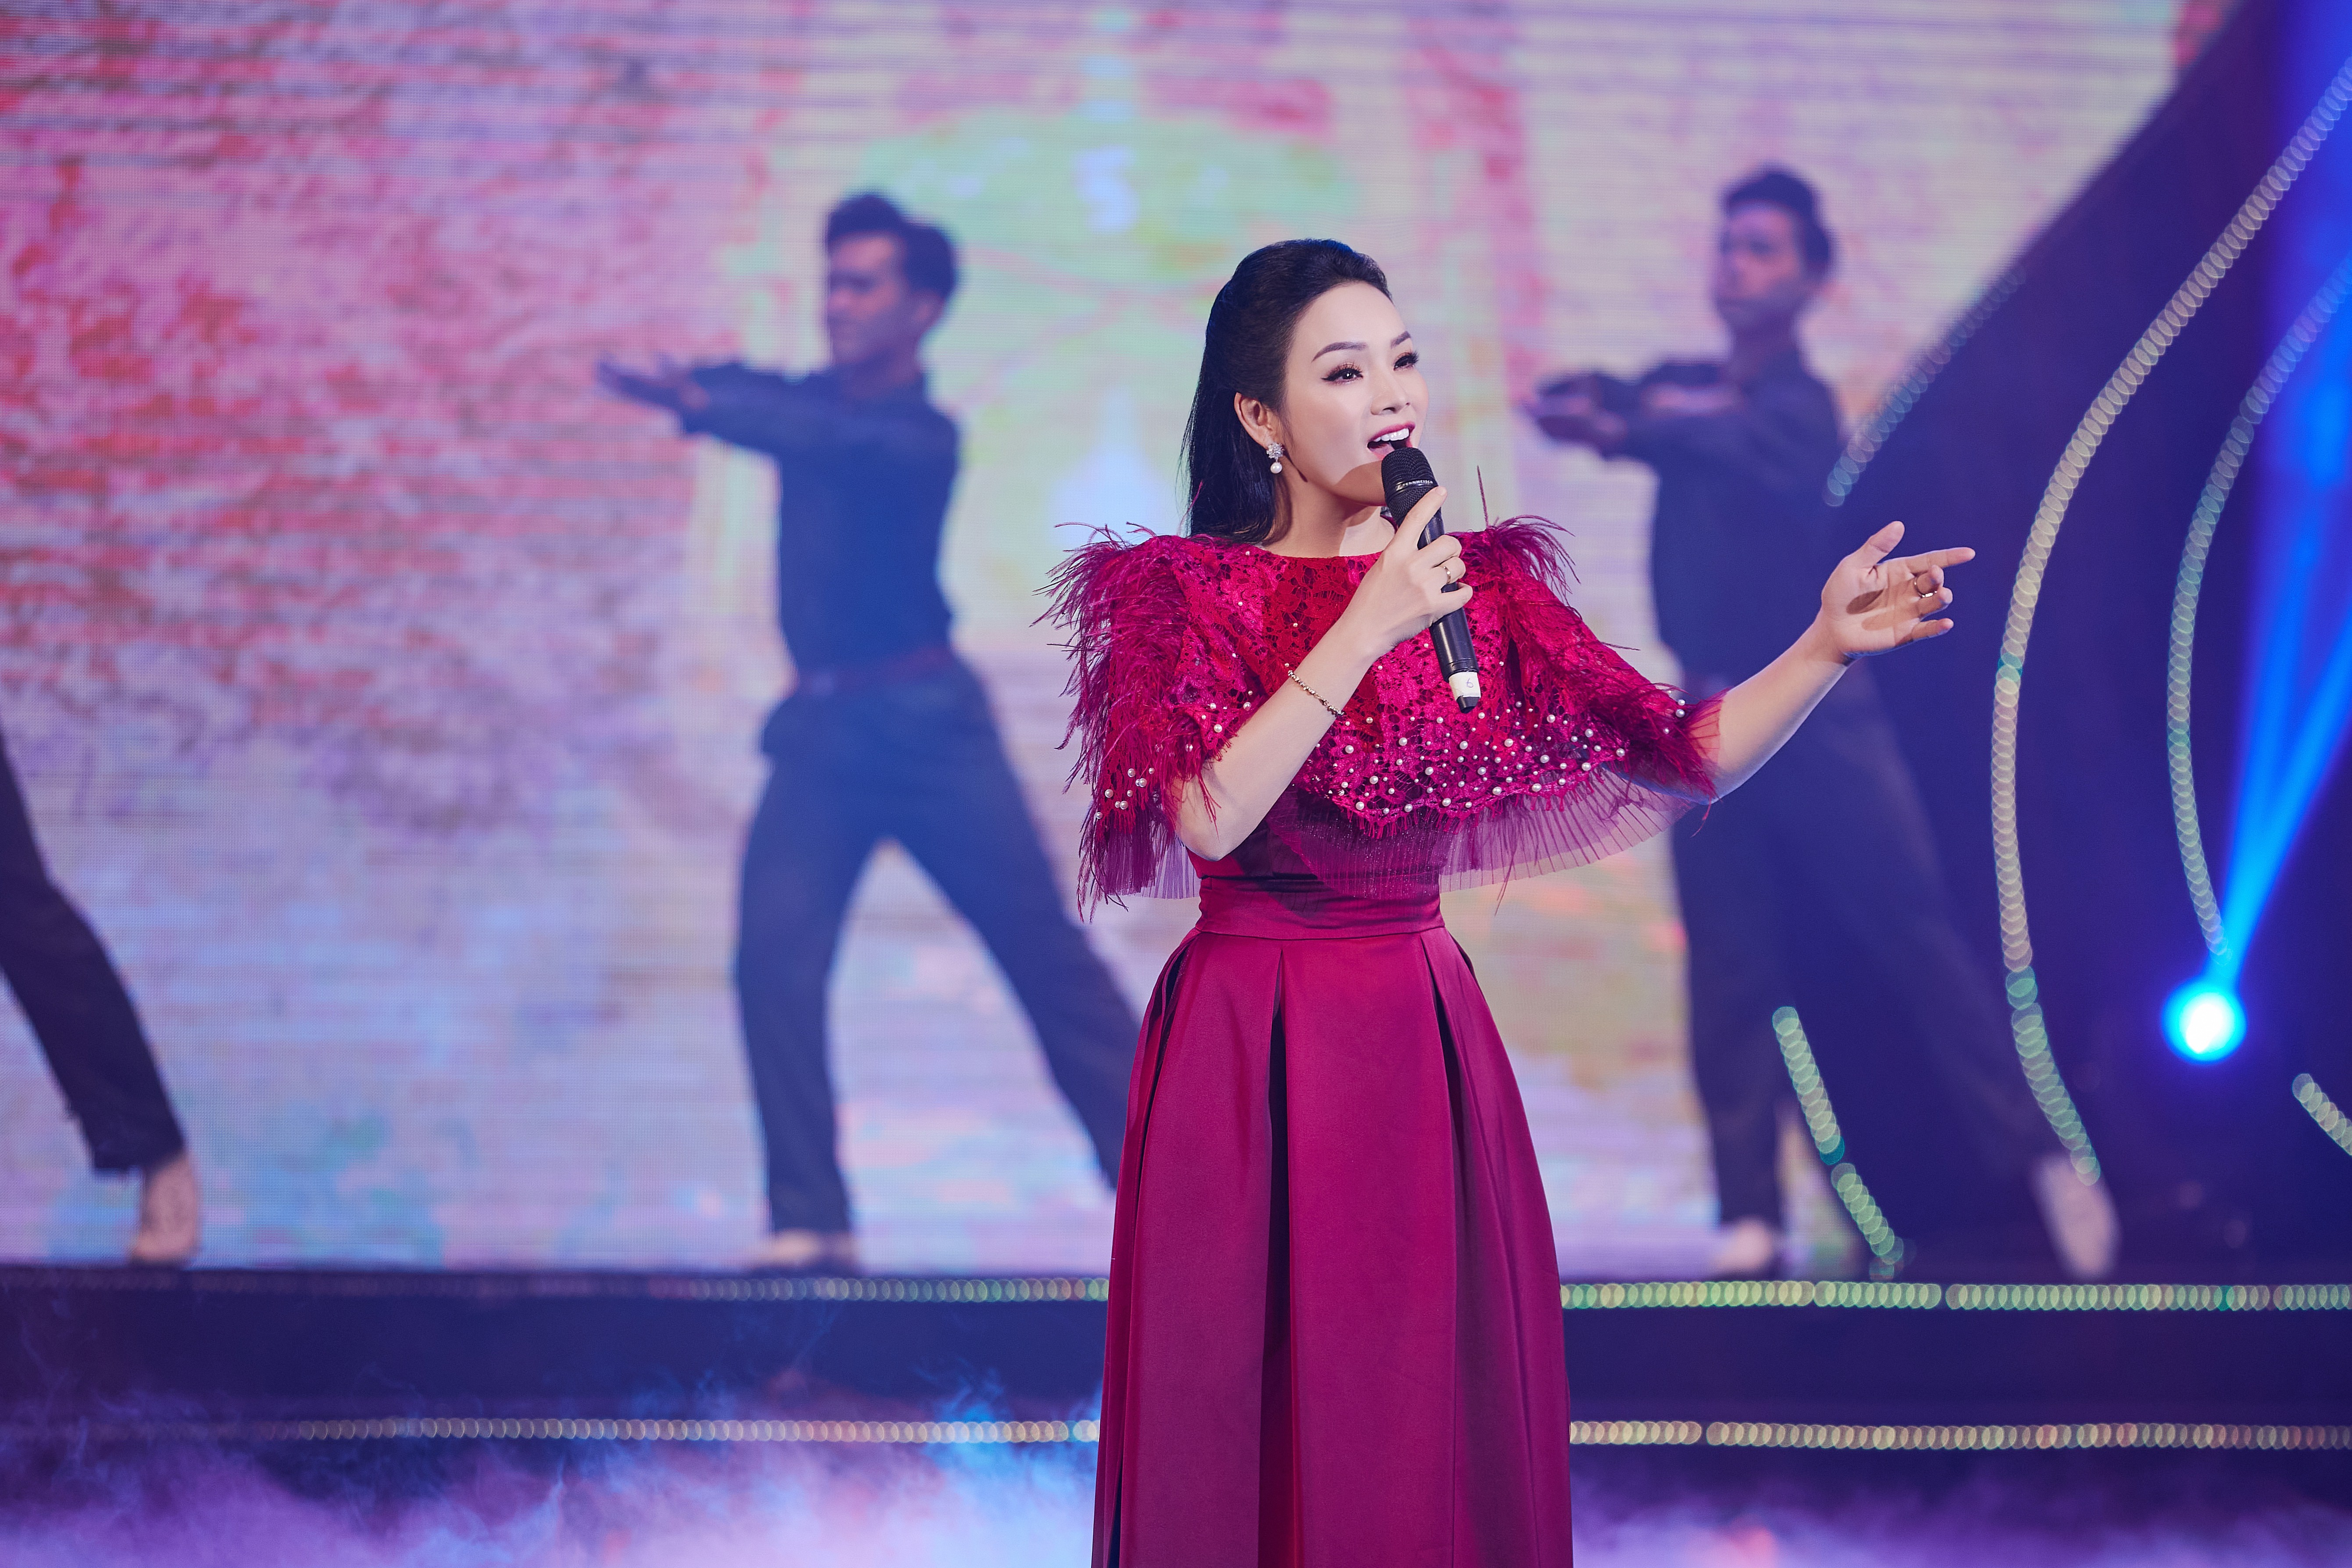 Ca sĩ Tân Nhàn kể câu chuyện hồi sinh giọng hát qua album 